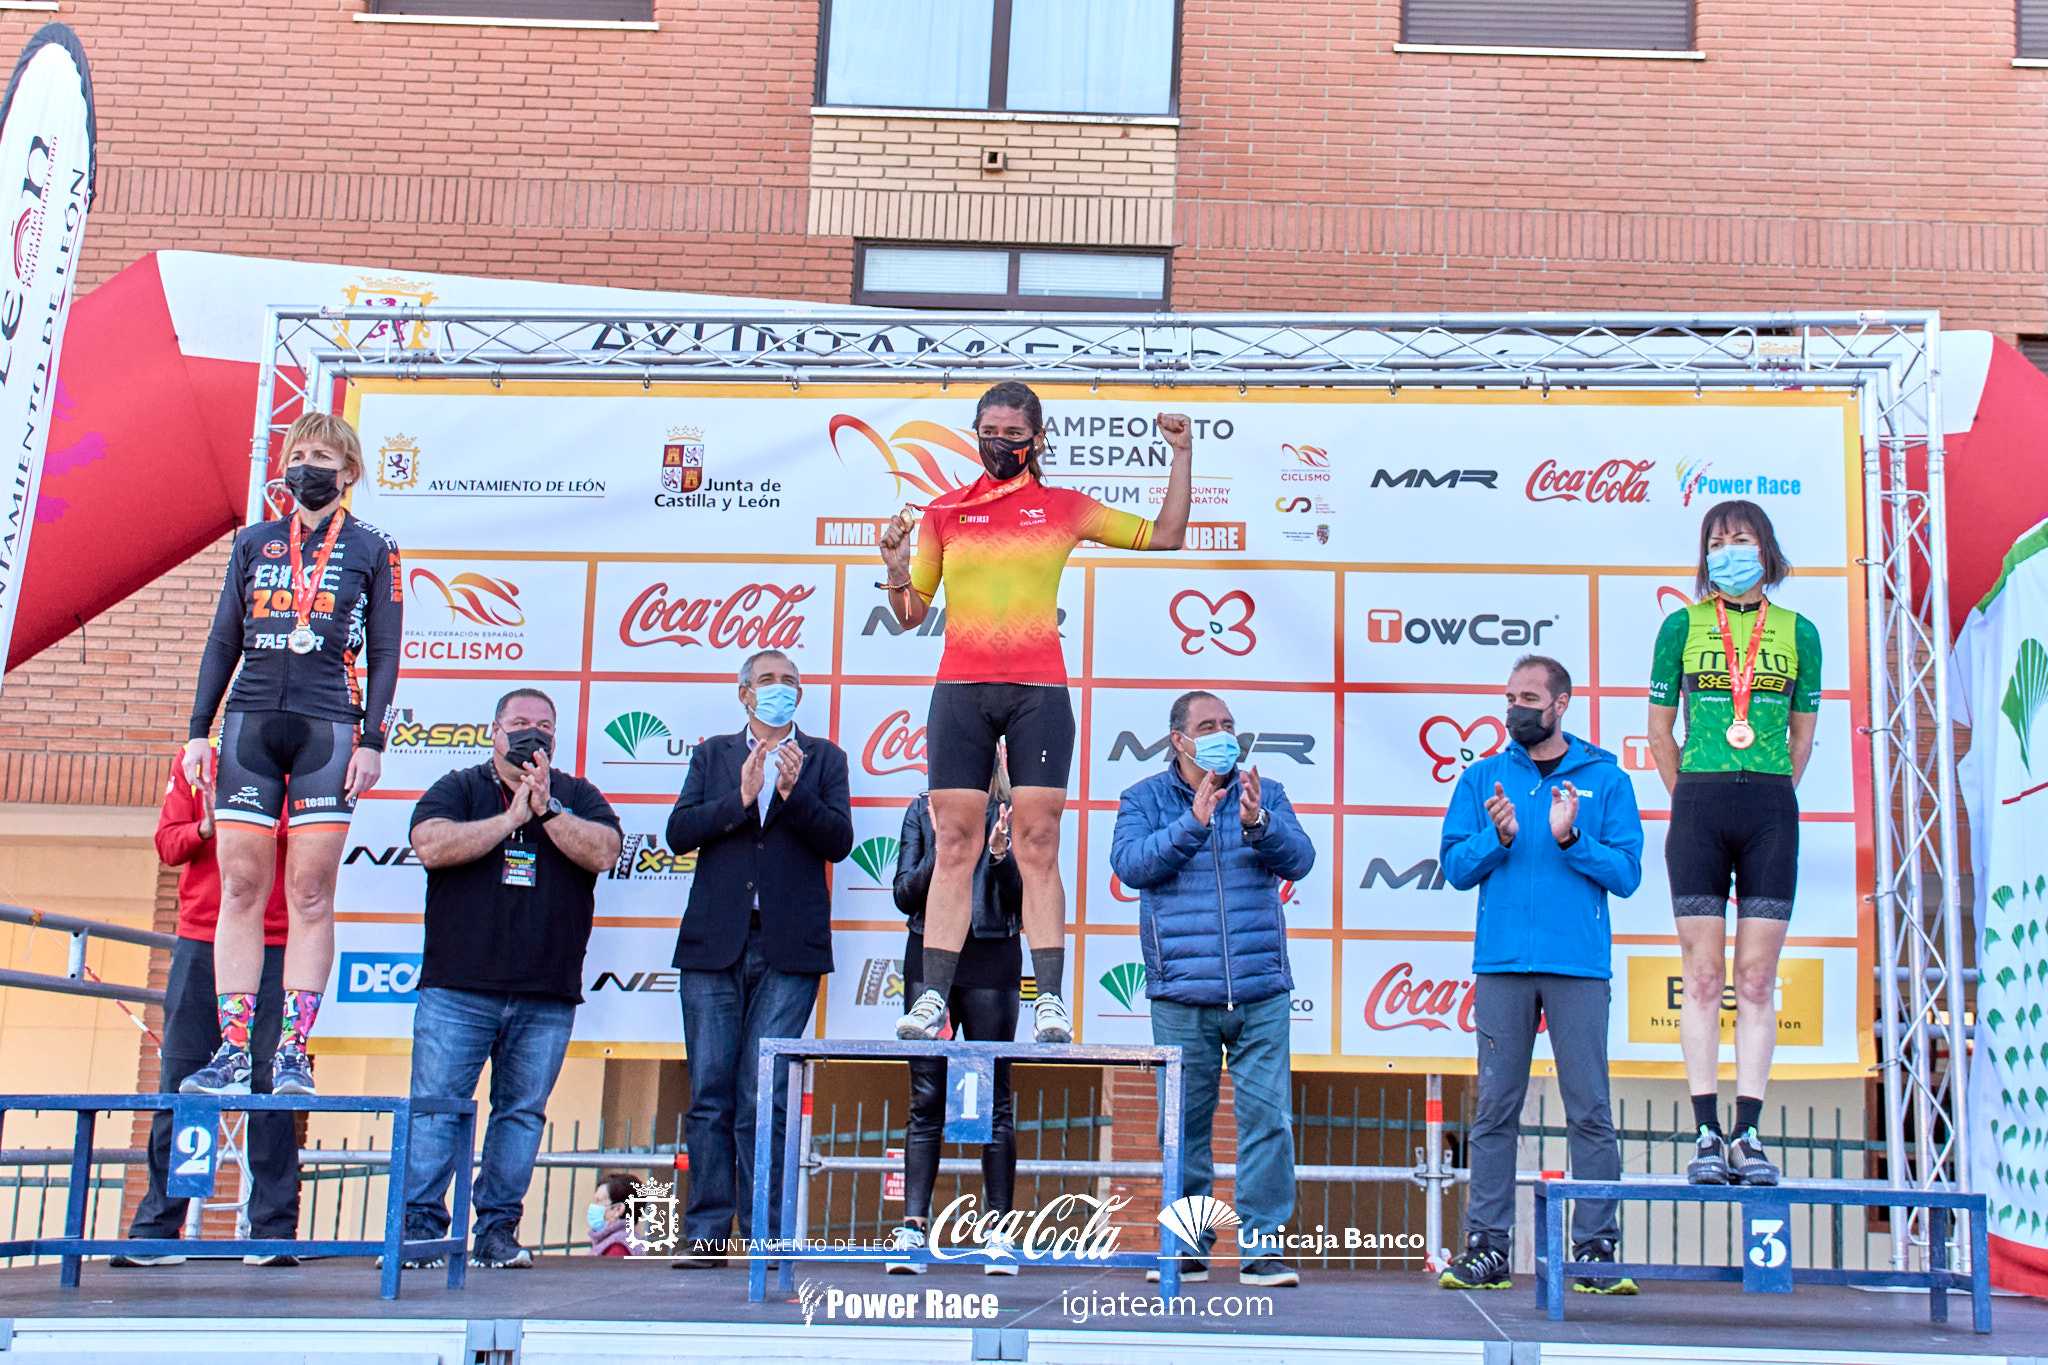 Susana Alonso revalida en León o título de campioa de España de XC Ultramaratón